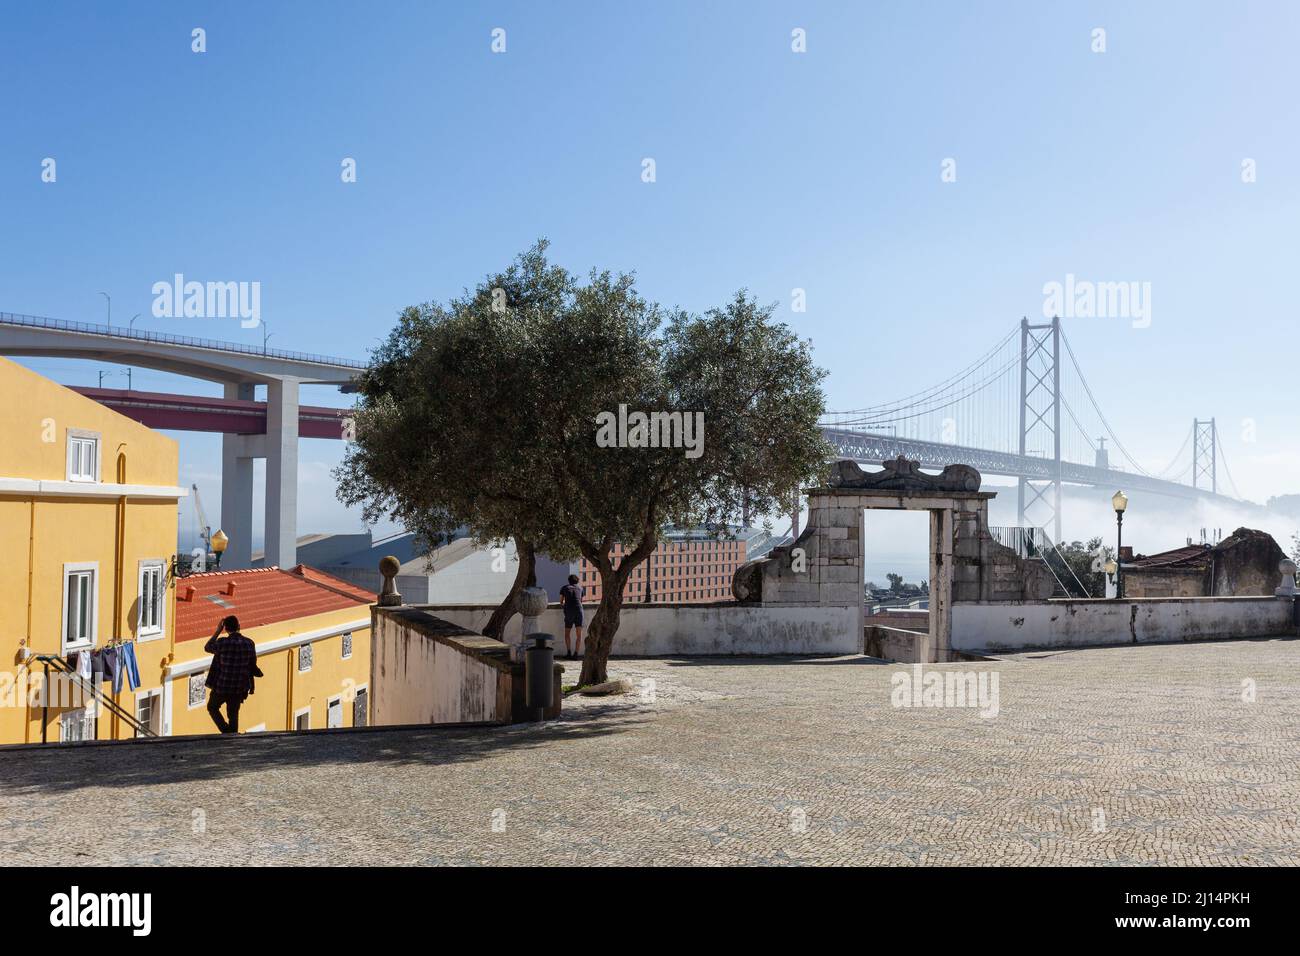 Il Miradouro de Santo Amaro, con la sua vista mozzafiato sul ponte iconico Ponte de 25 Abril e Rio Tejo, nel quartiere di Alcântara, Lisbona. Foto Stock